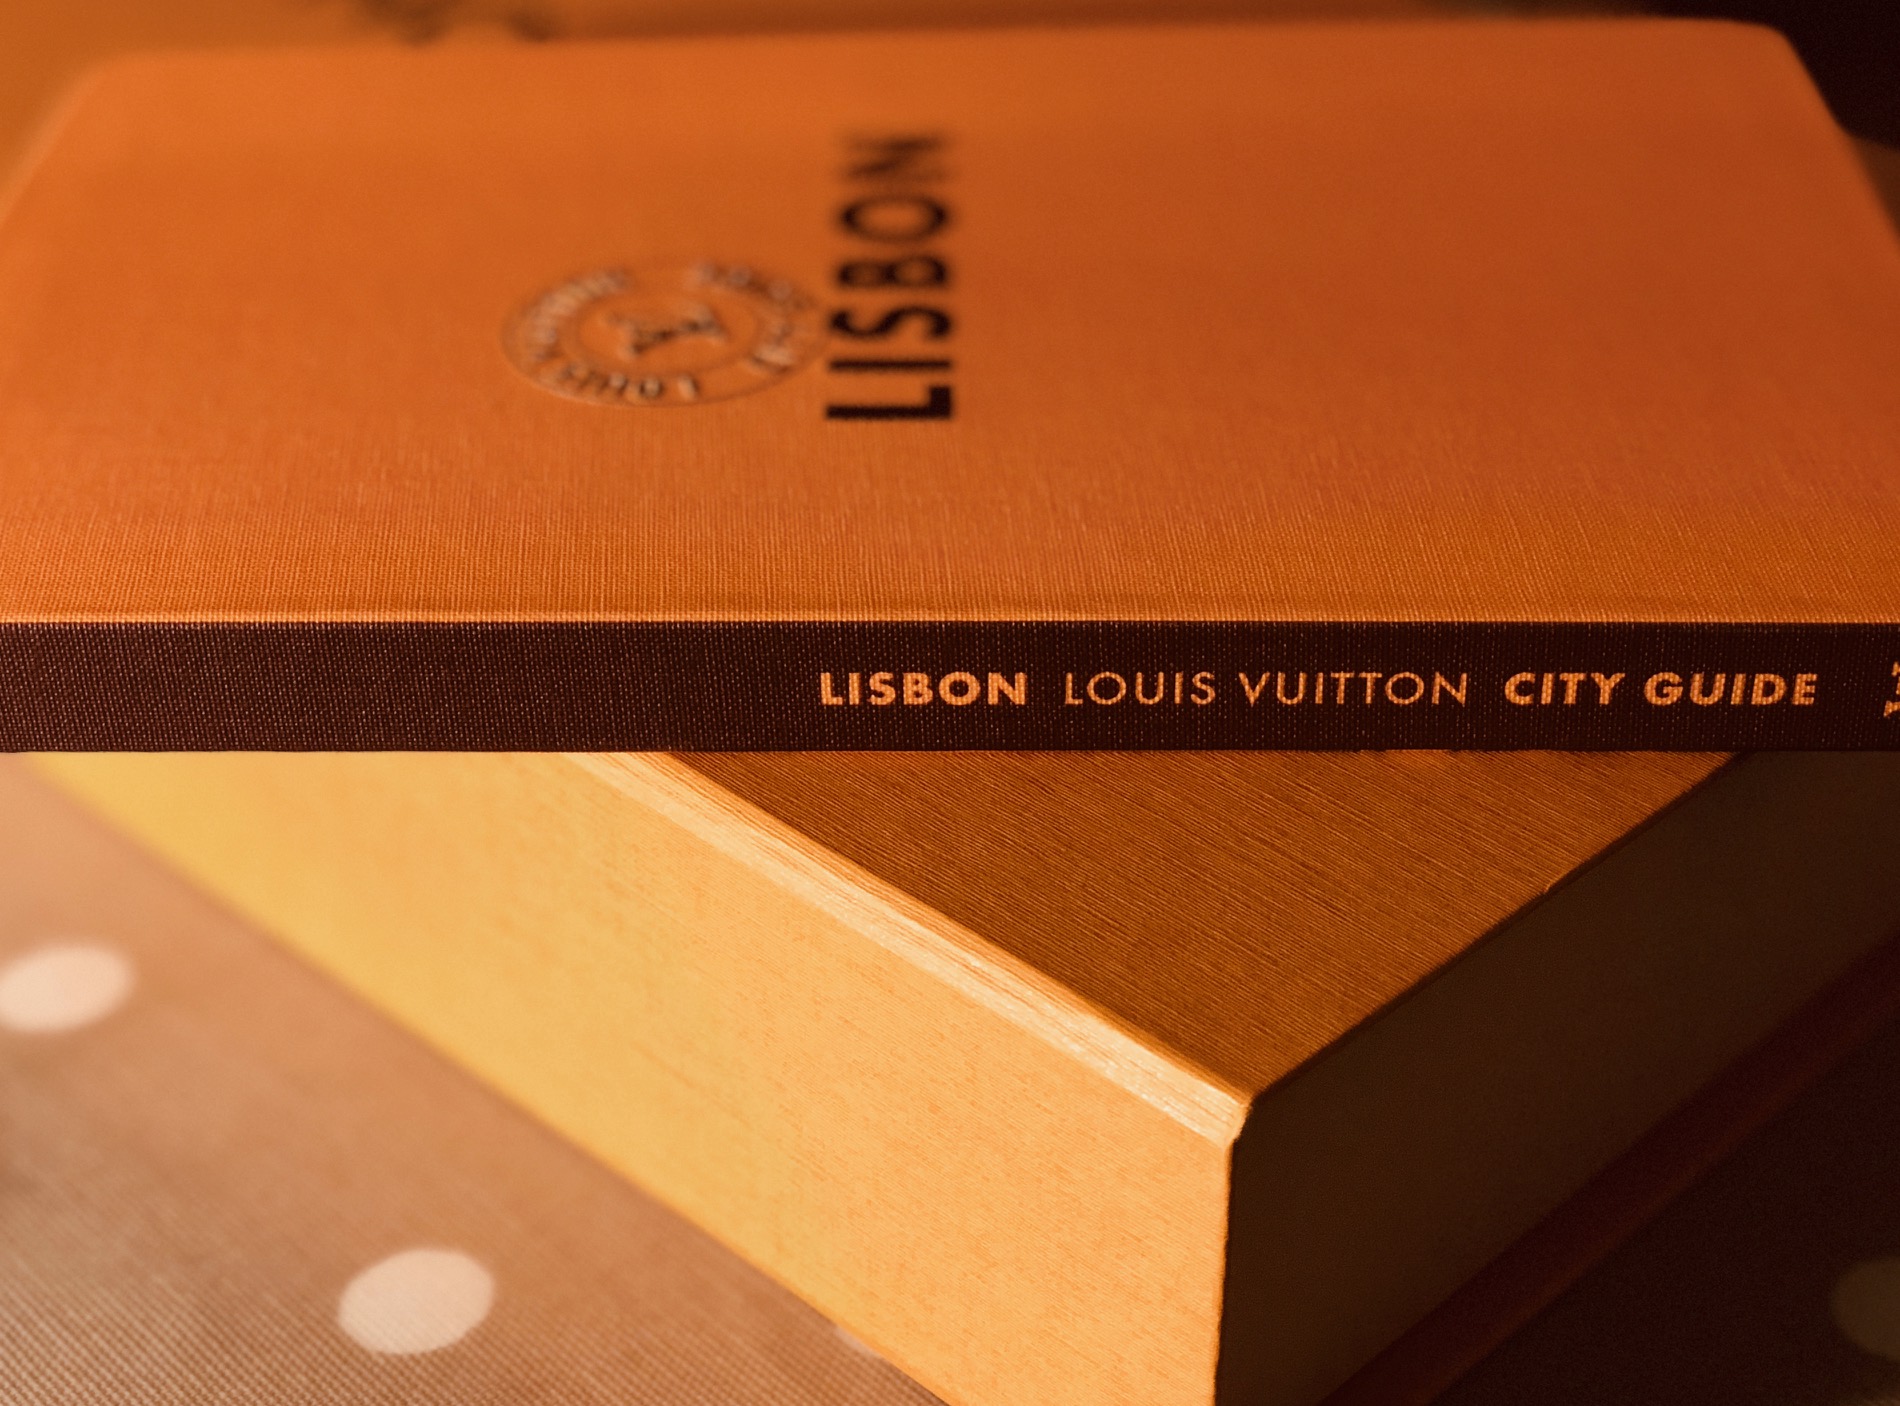 LISBON LOUIS VUITTON CITY GUIDE